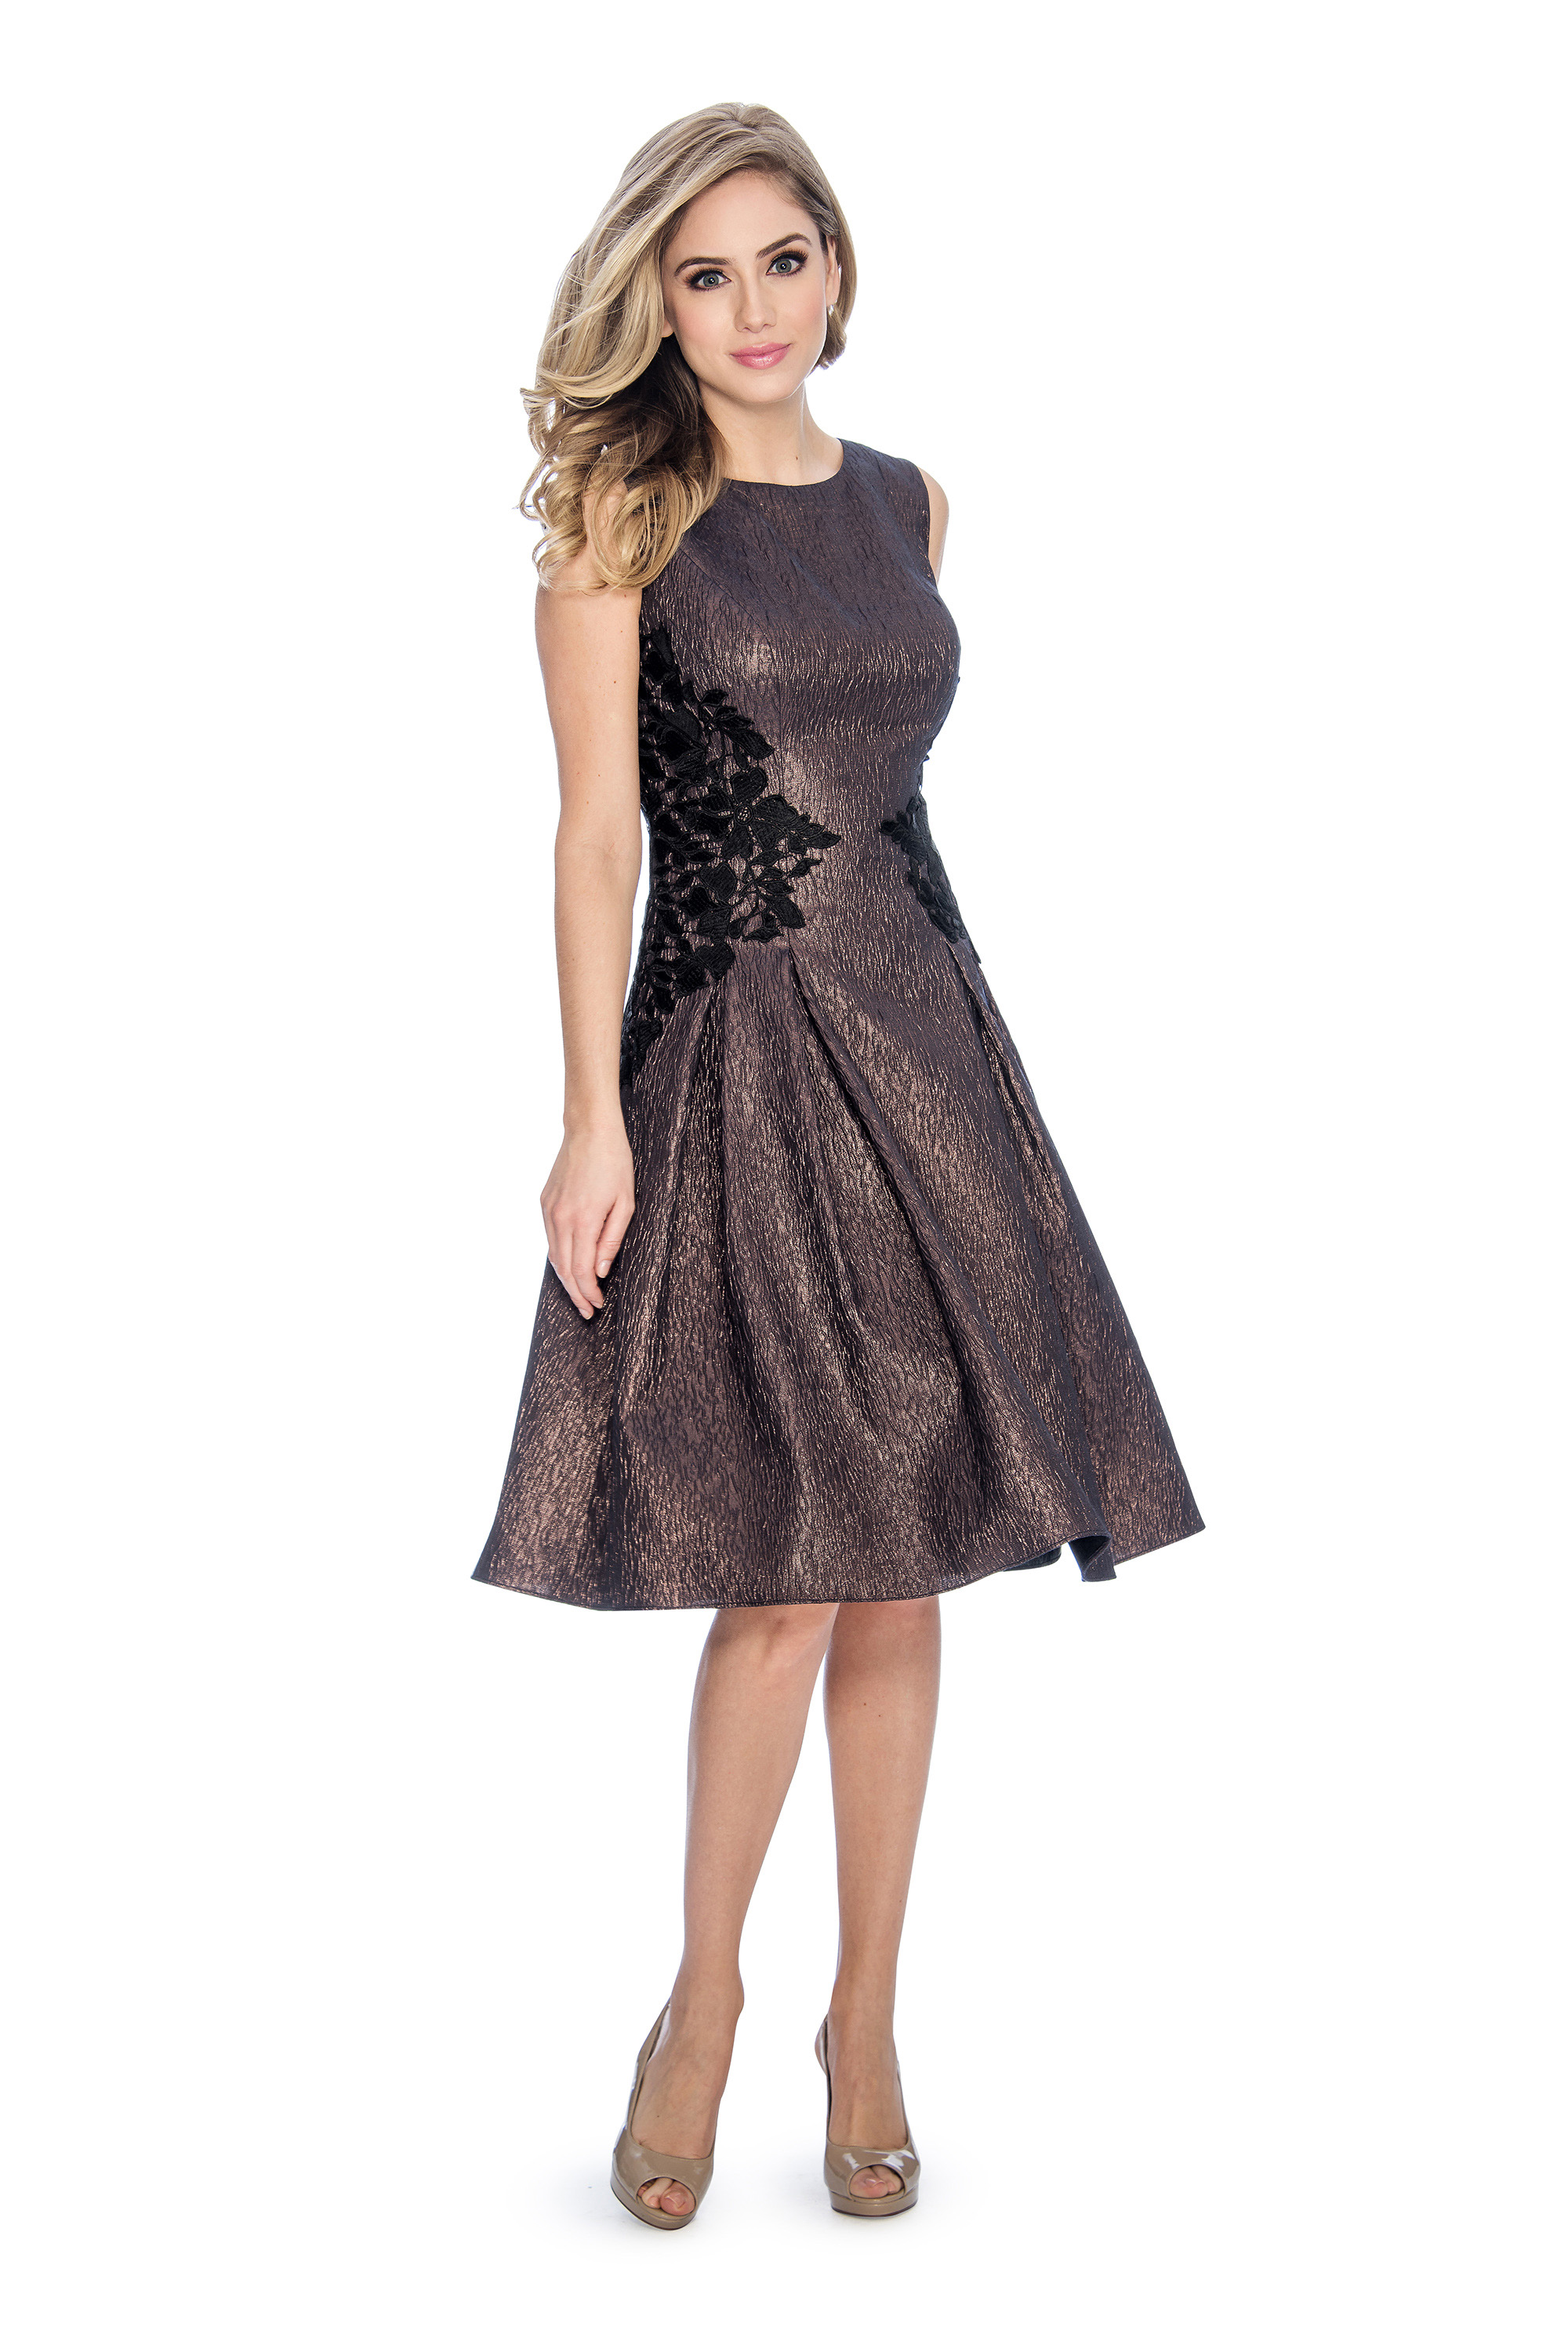 A line, lace applique, metallic, short dress